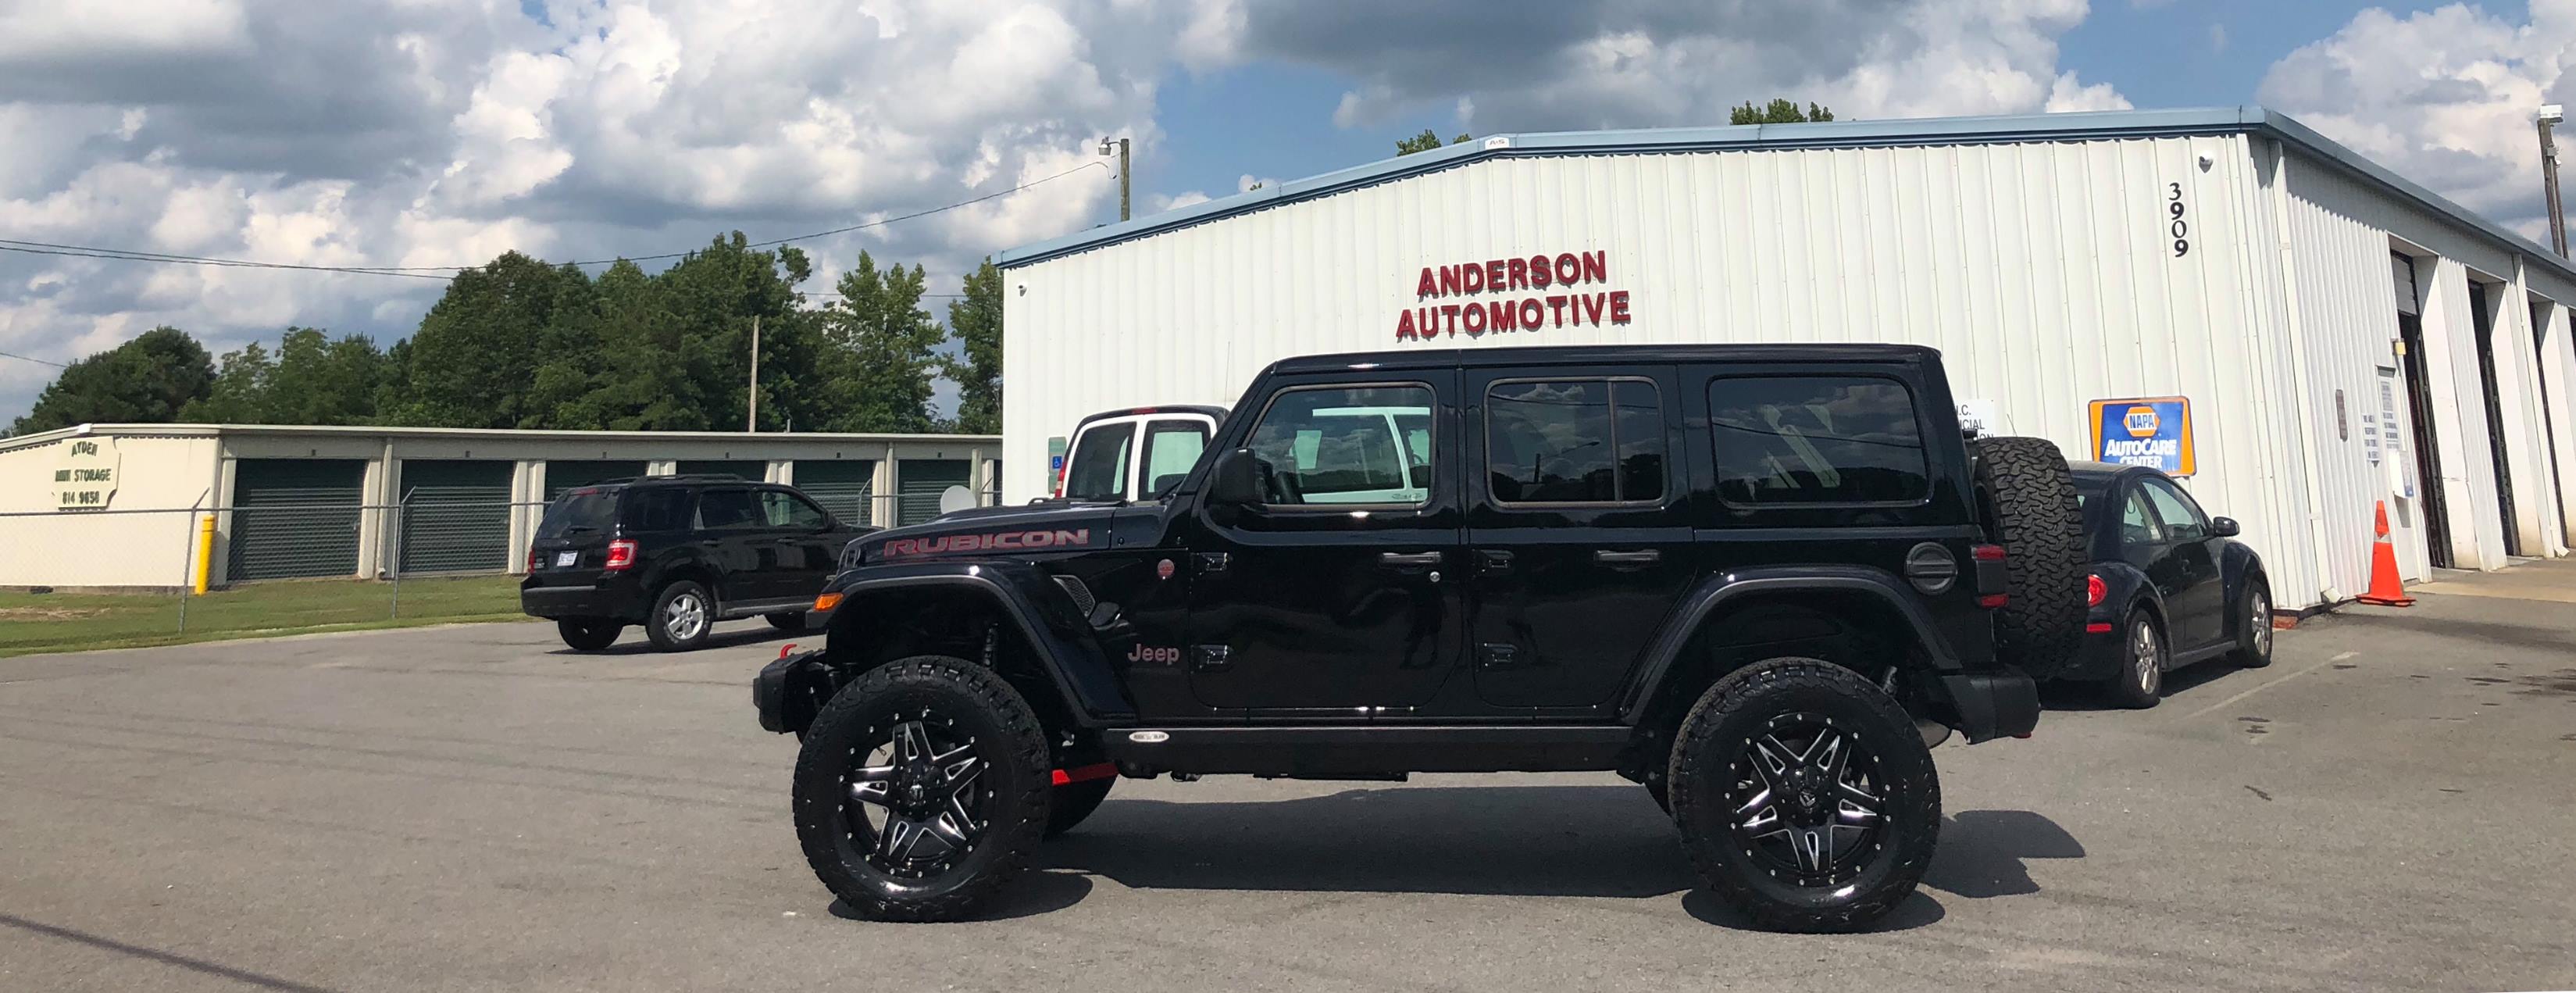 Anderson Automotive Inc